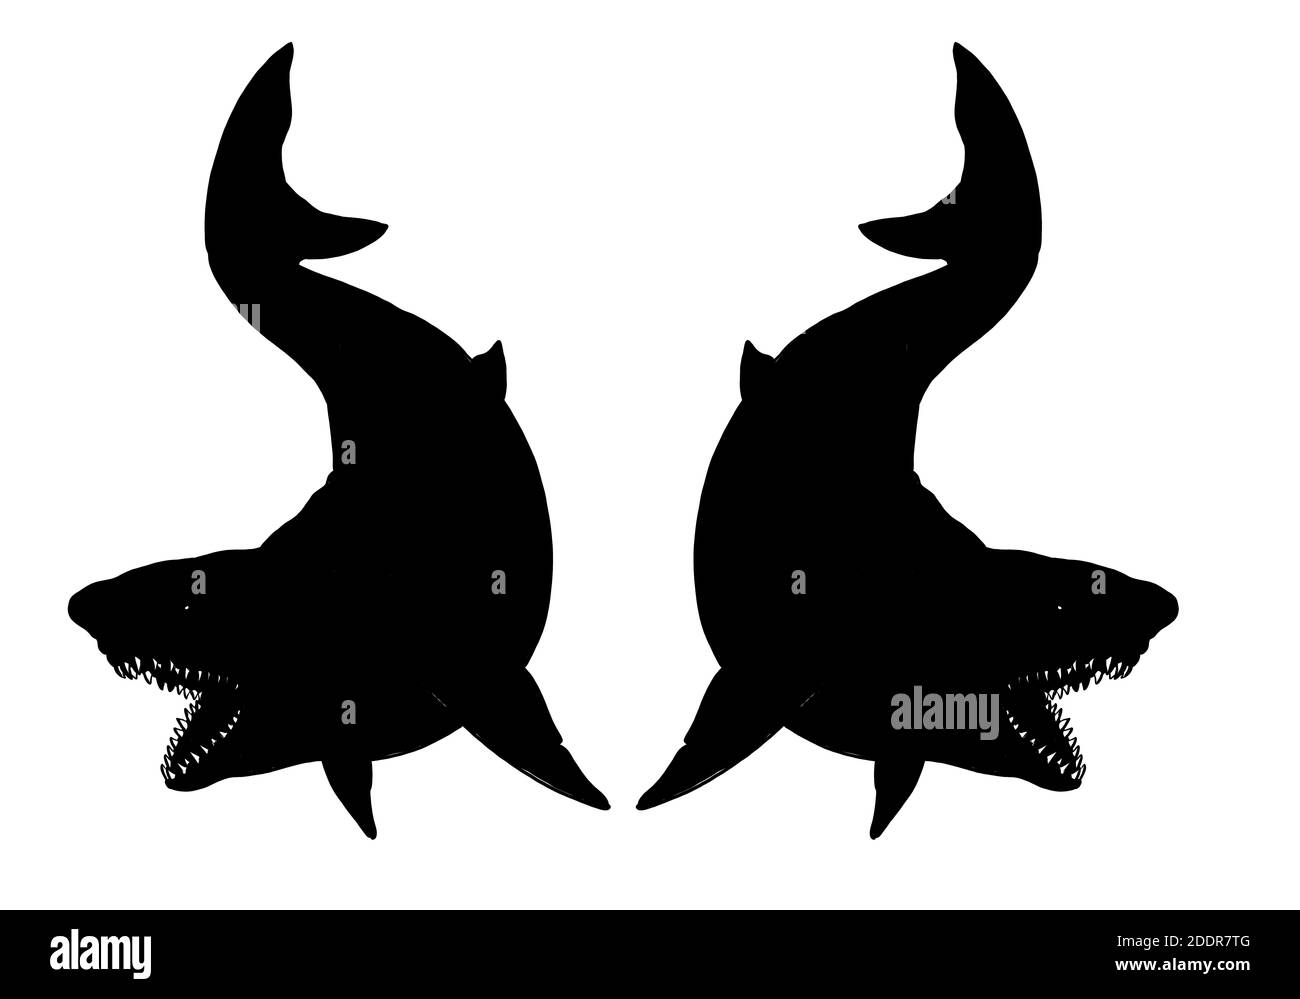 Gabarit de requins géants. Gros dessin de requin. Illustration monster megalodon. Banque D'Images